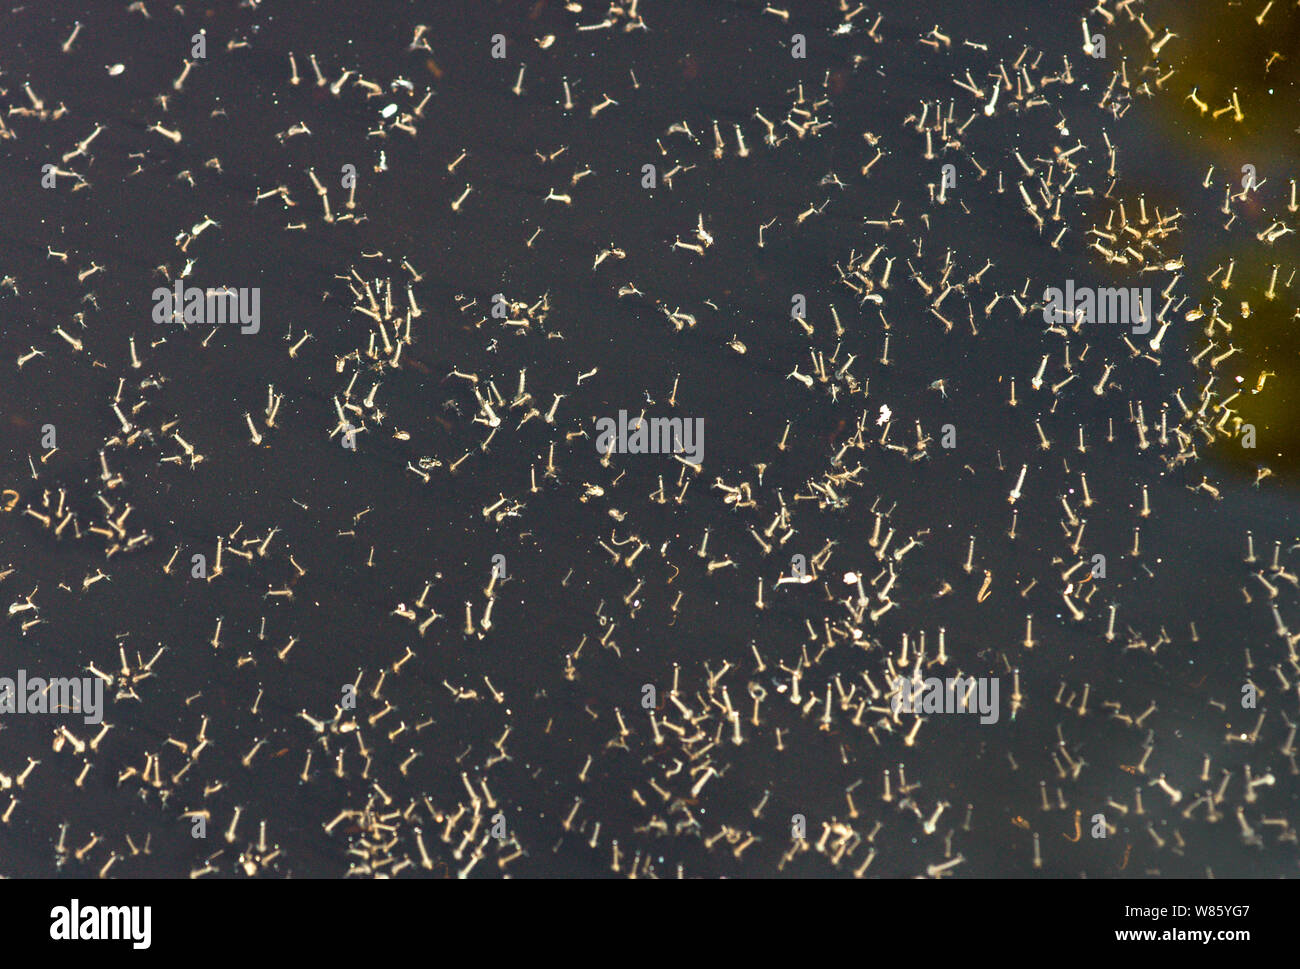 Les larves d'insectes,(Culux molestus).photographié dans le réservoir en verre après avoir été retiré d'un récipient de l'eau jardin.Sud Ouest France Banque D'Images